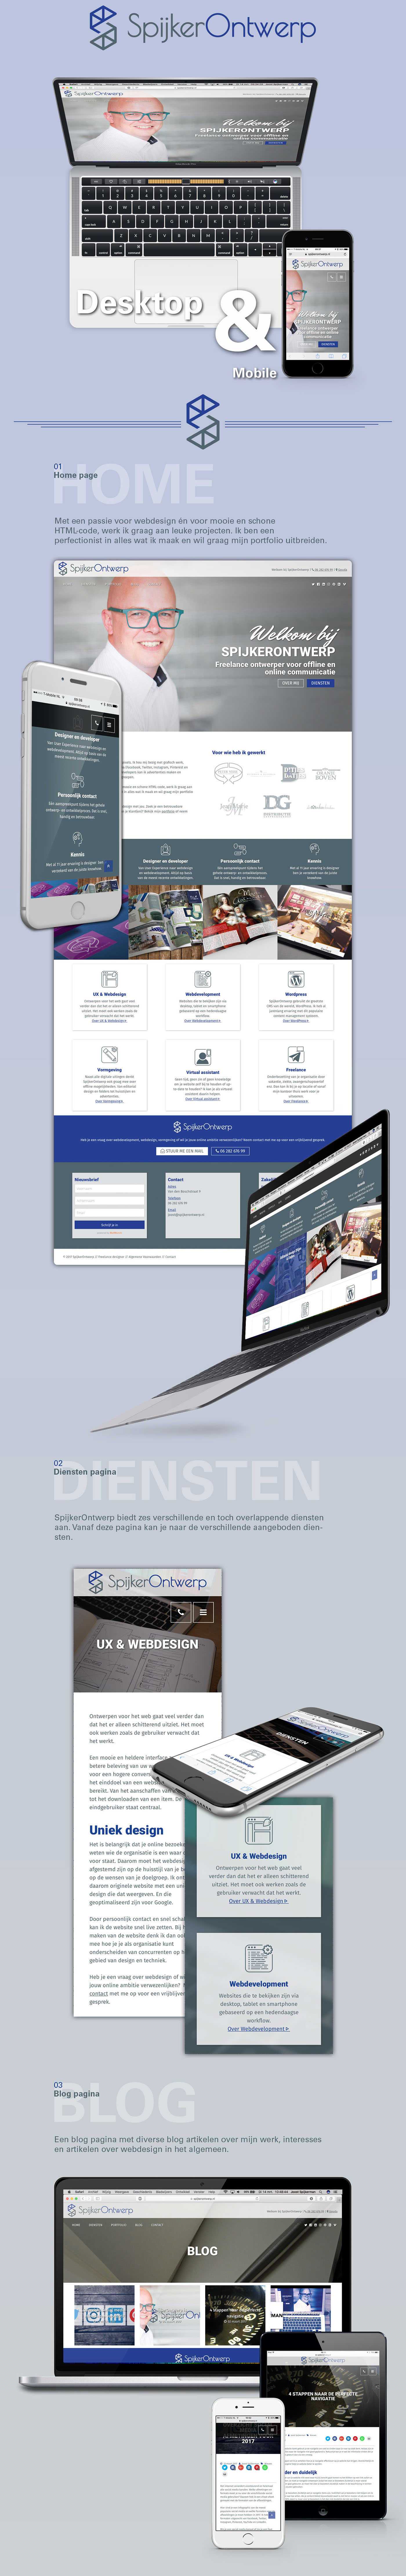 Website Webdesign SpijkerOntwerp Interface Responsive development